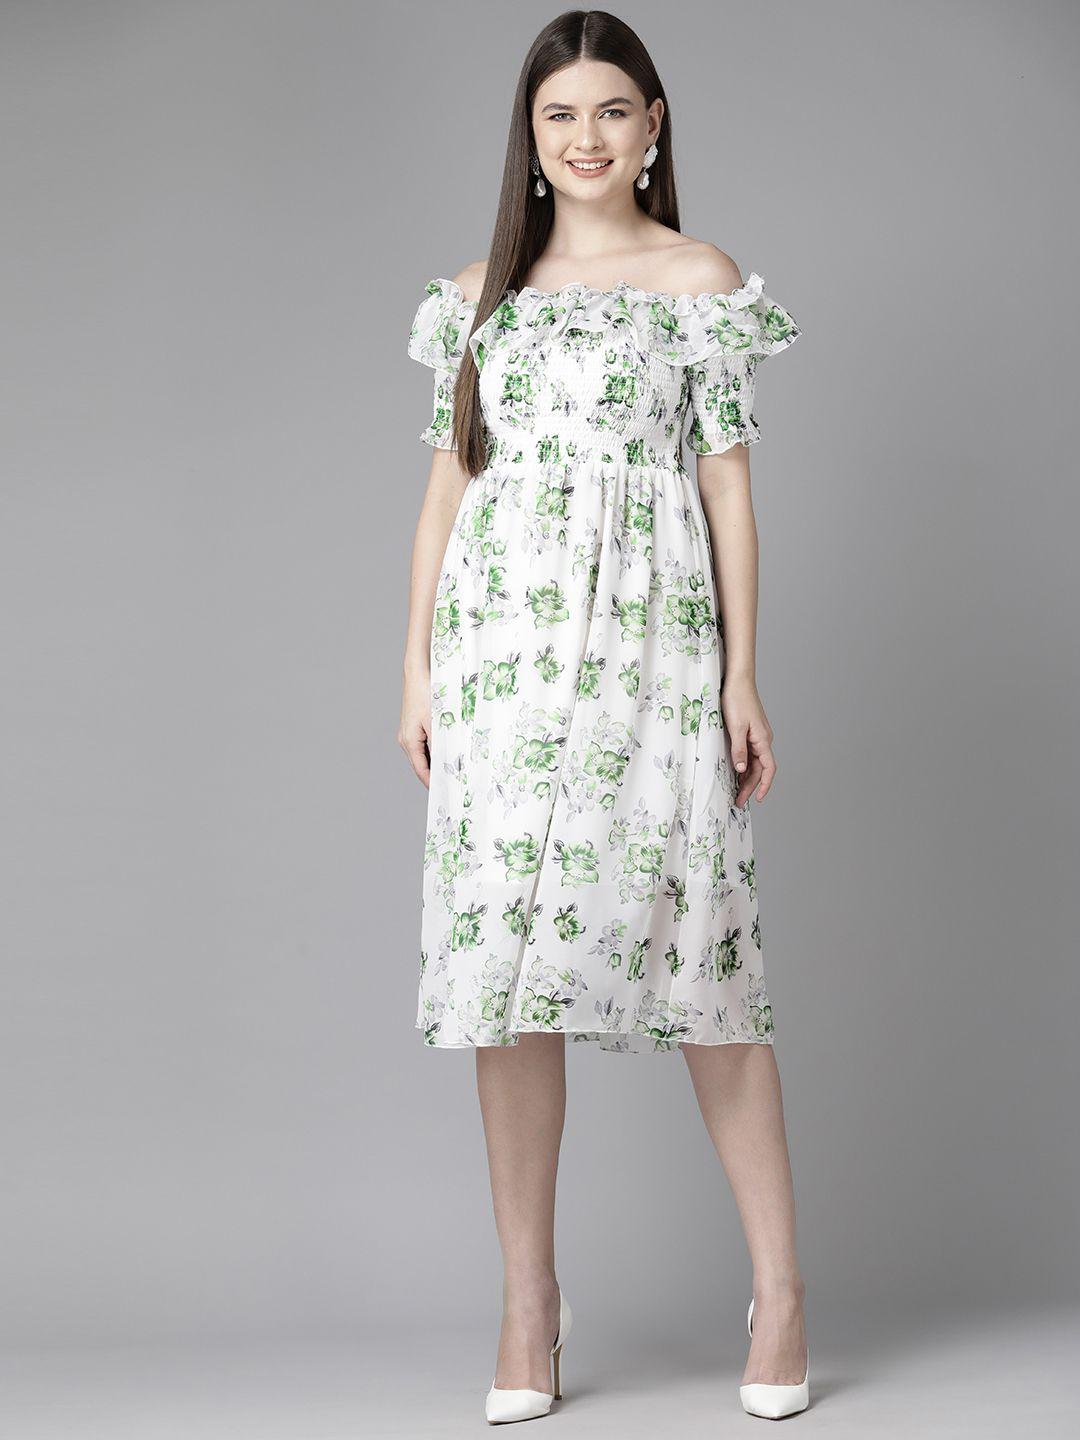 aarika floral print off-shoulder smocked georgette fit & flare dress